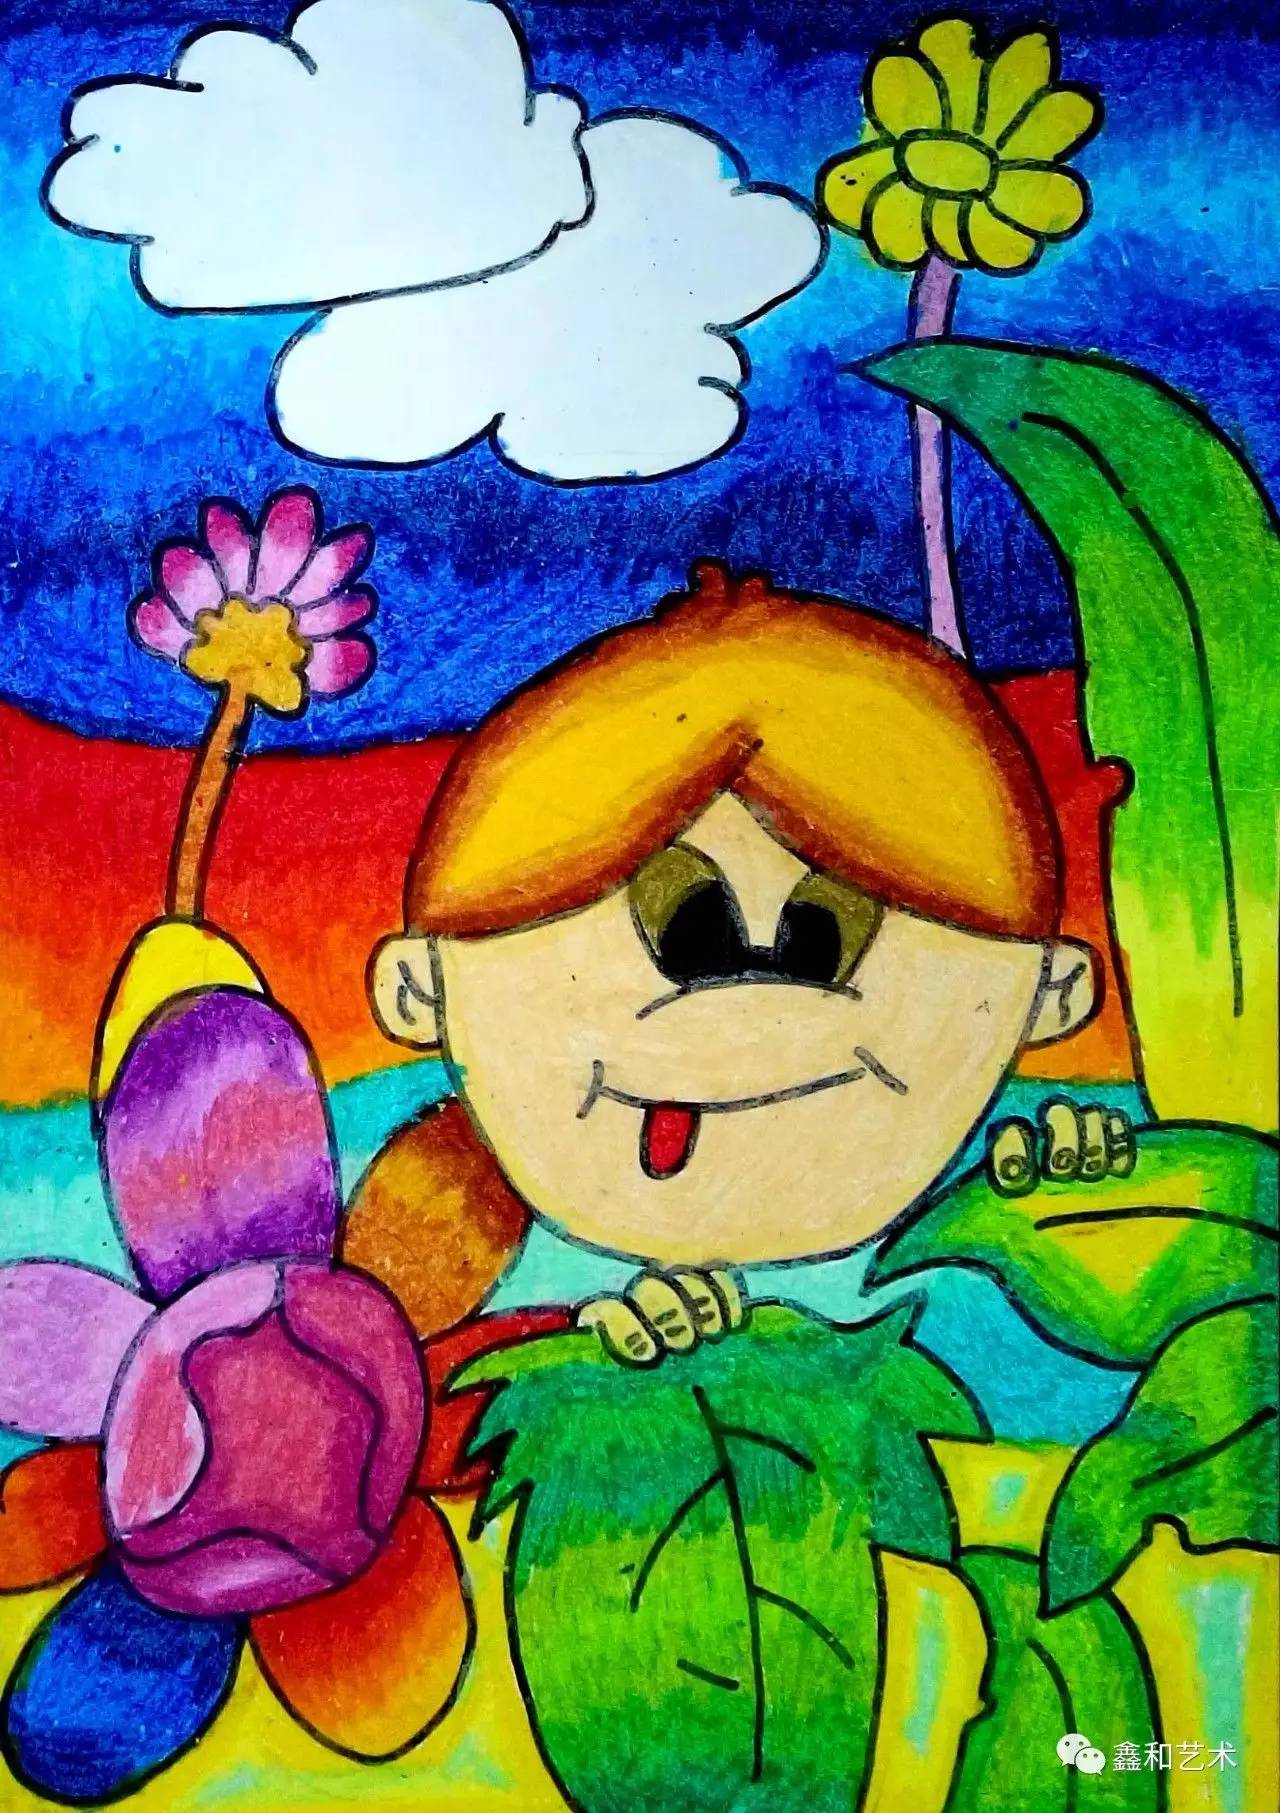 西瓜真甜 10岁 唐妙音 童心的自然流露是世界上最美的艺术语言,绘画